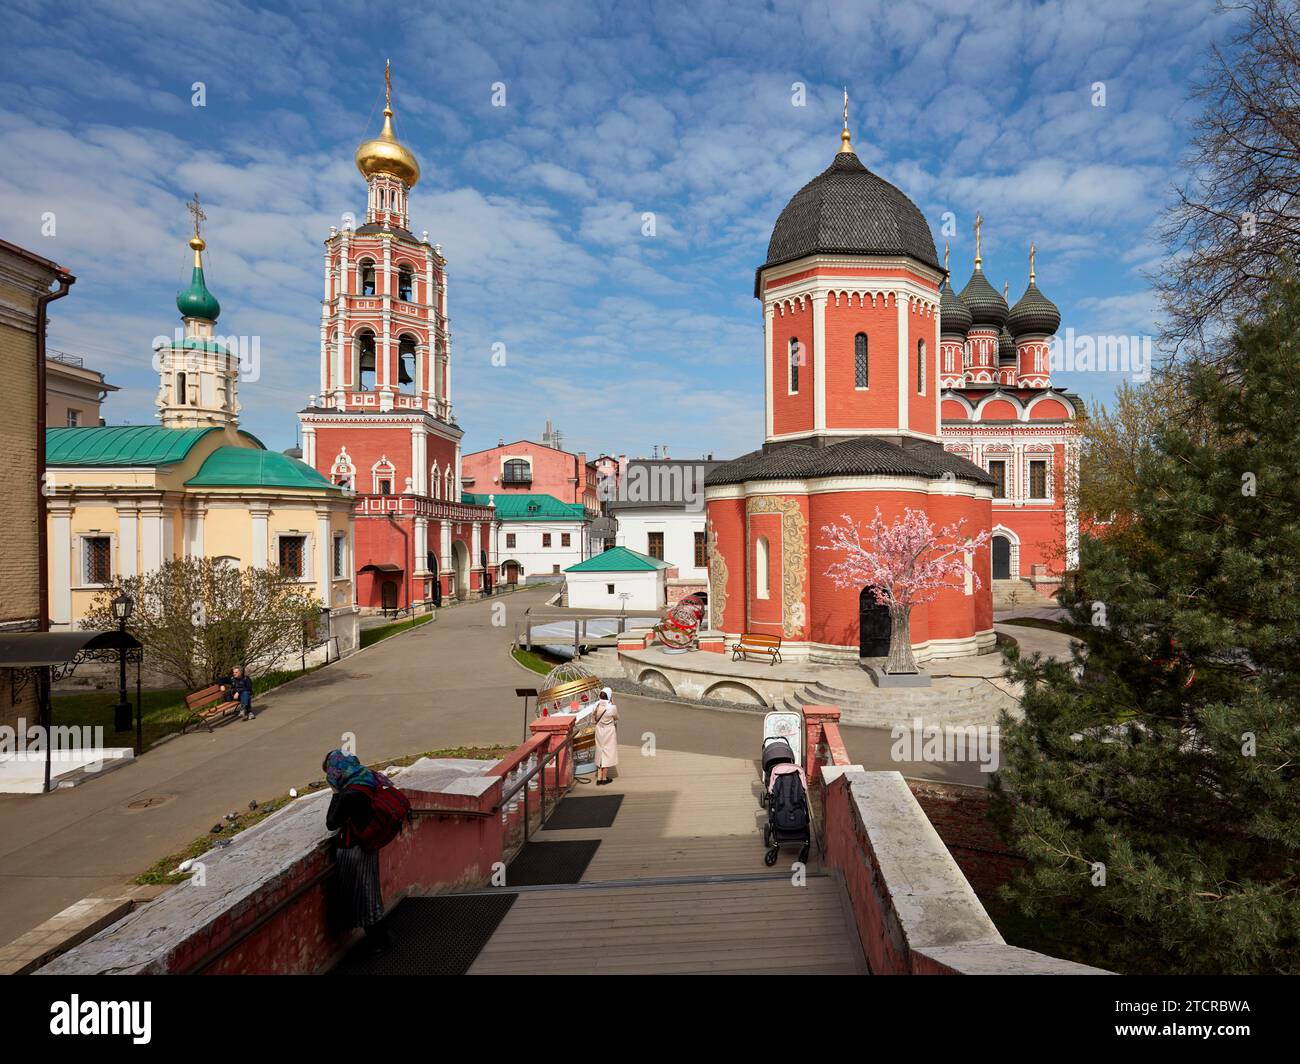 Territoire du monastère de Vysokopetrovsky (monastère supérieur de Saint-Pierre). Moscou, Russie. Banque D'Images